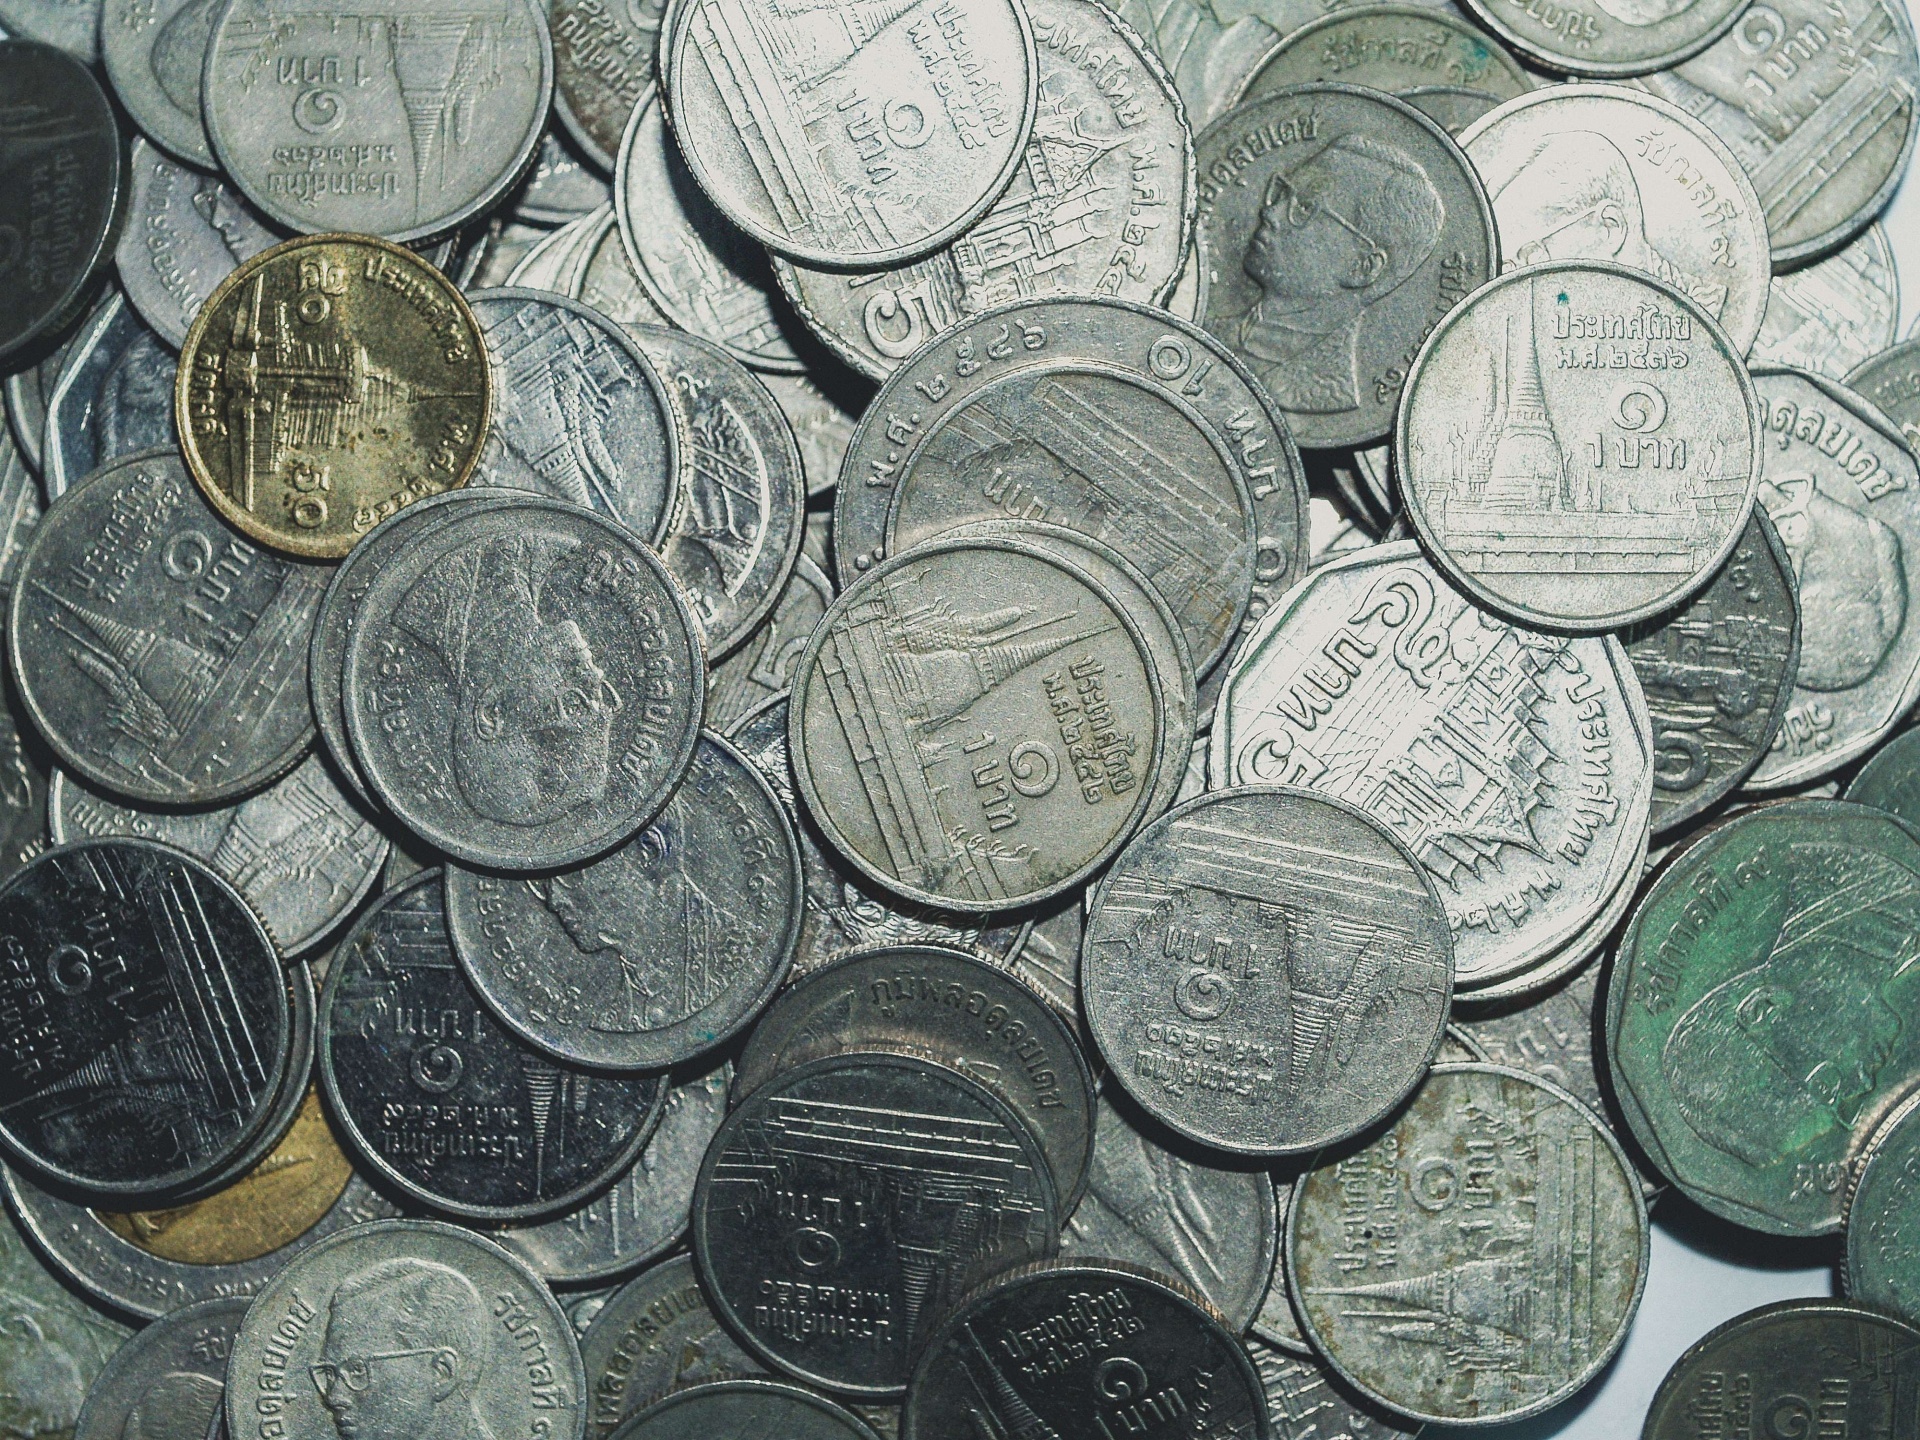 Thai Coins Bath Money